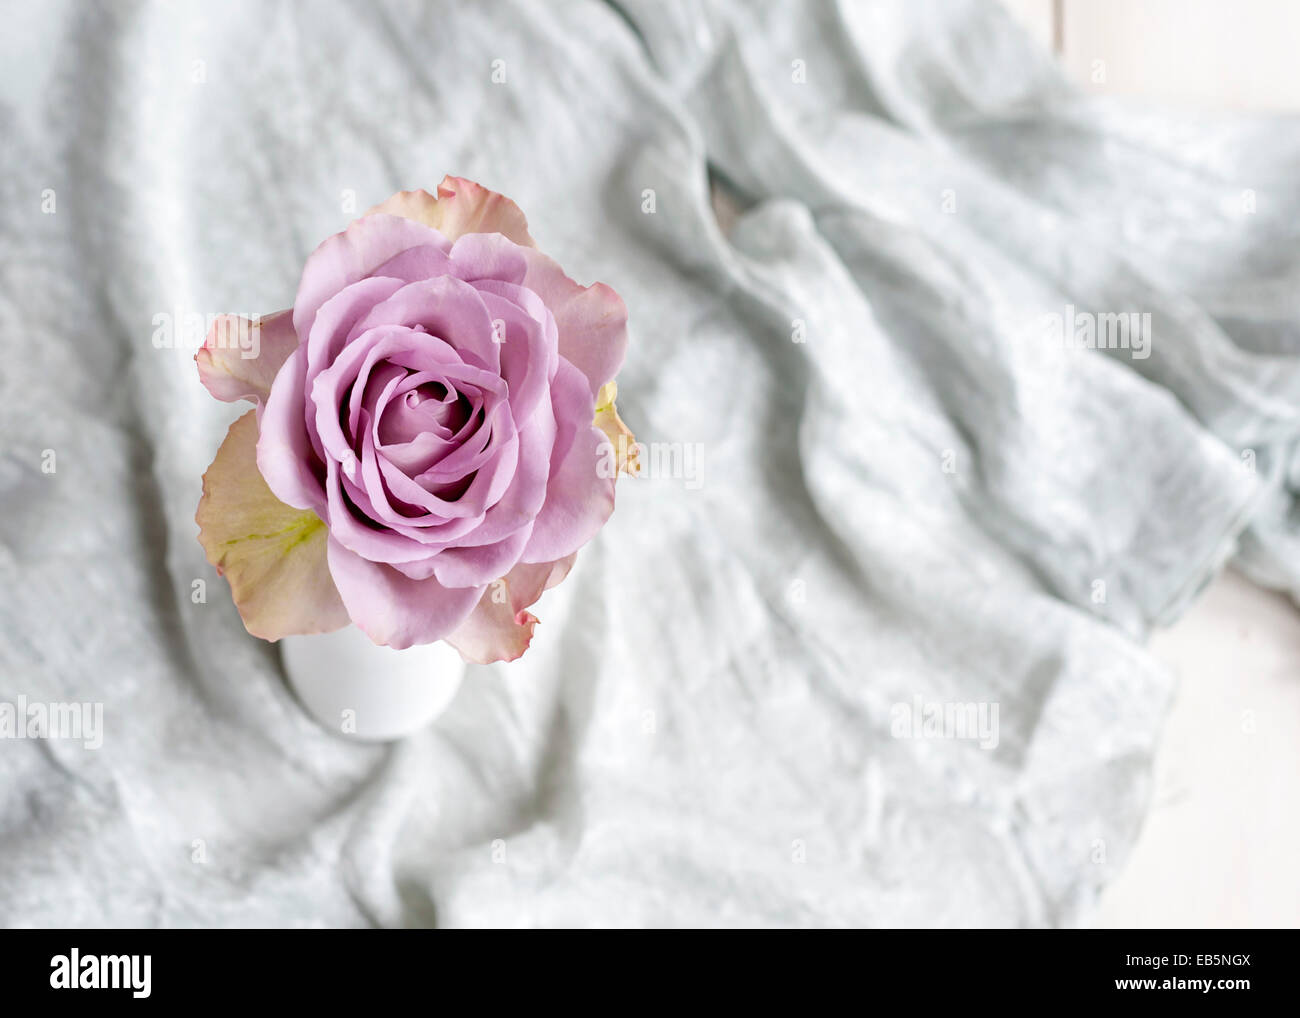 Solo Rosa Lila en un jarrón blanco gris con tejido de seda en el fondo Foto de stock